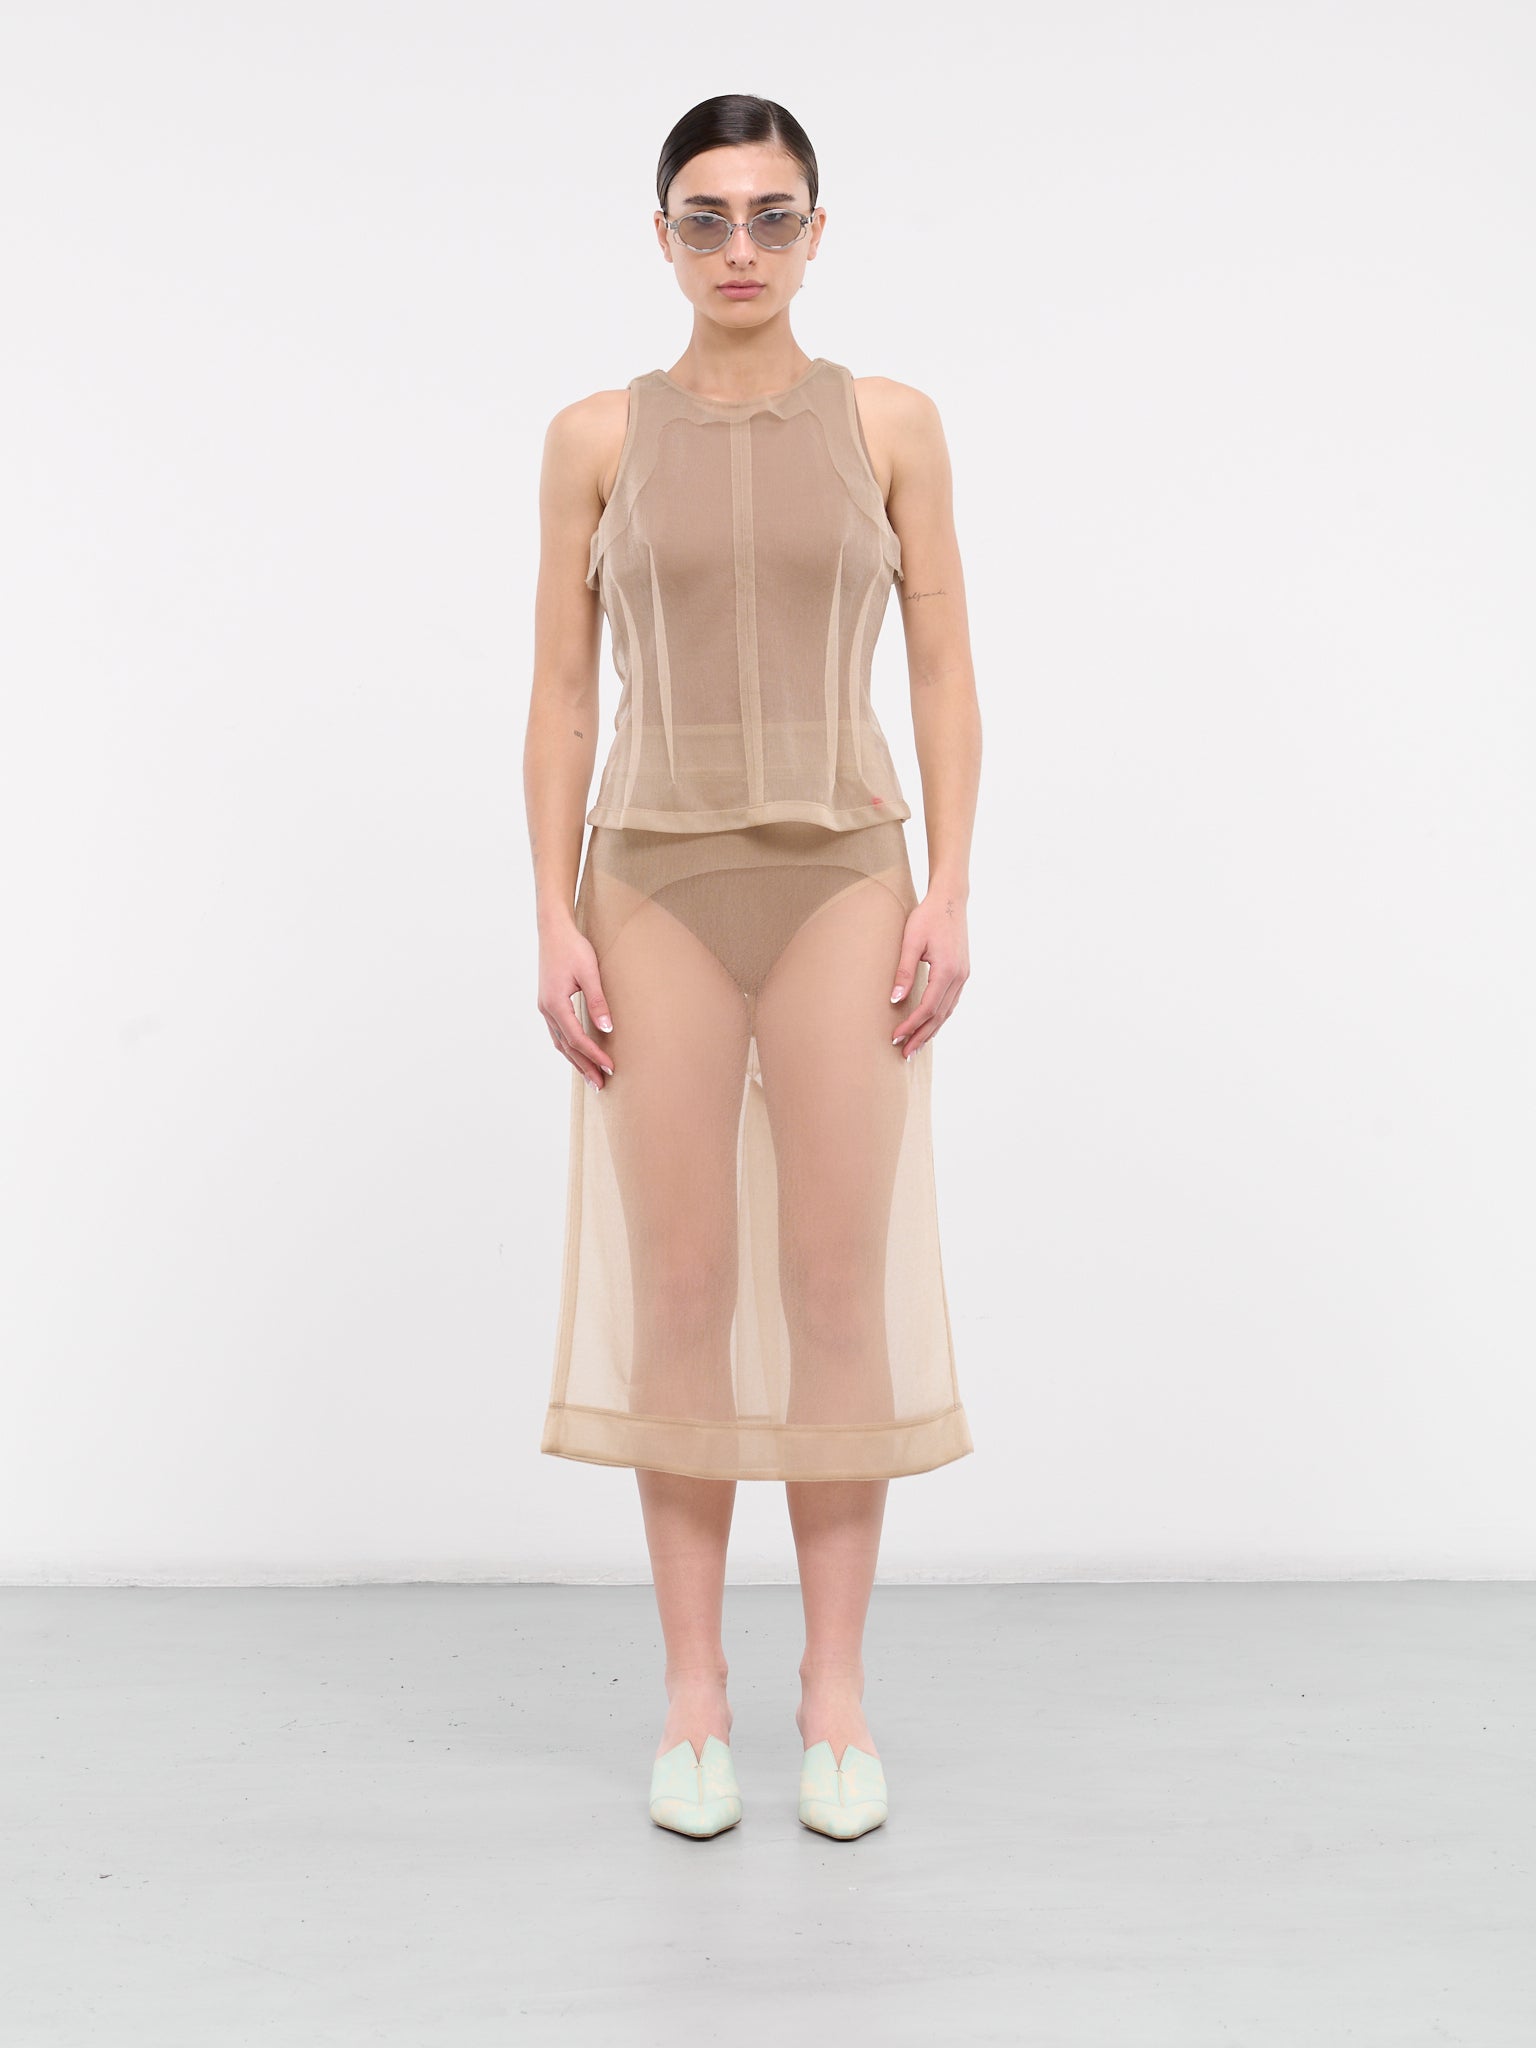 Sheer Nylon Skirt (9026-EL-CHAMPAGNE)